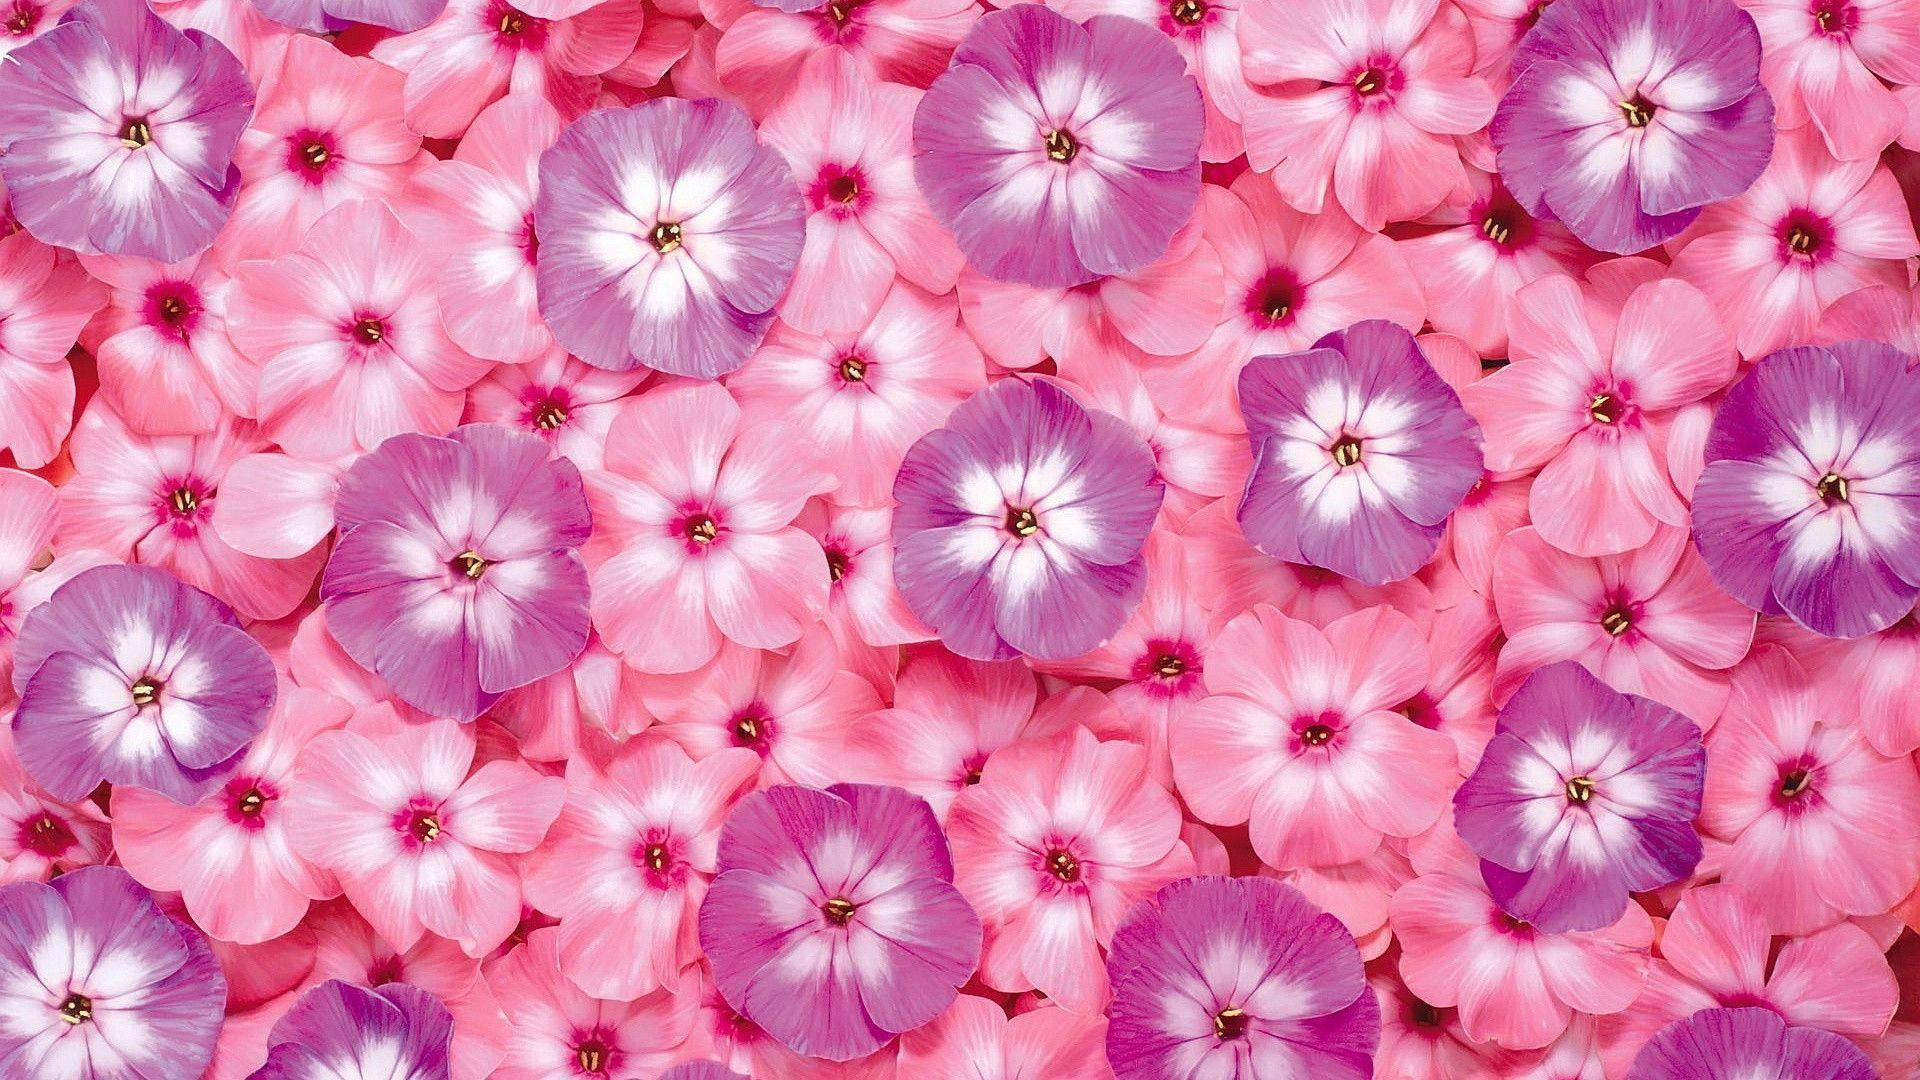 Vibrant Pink Flower in Full Bloom Wallpaper